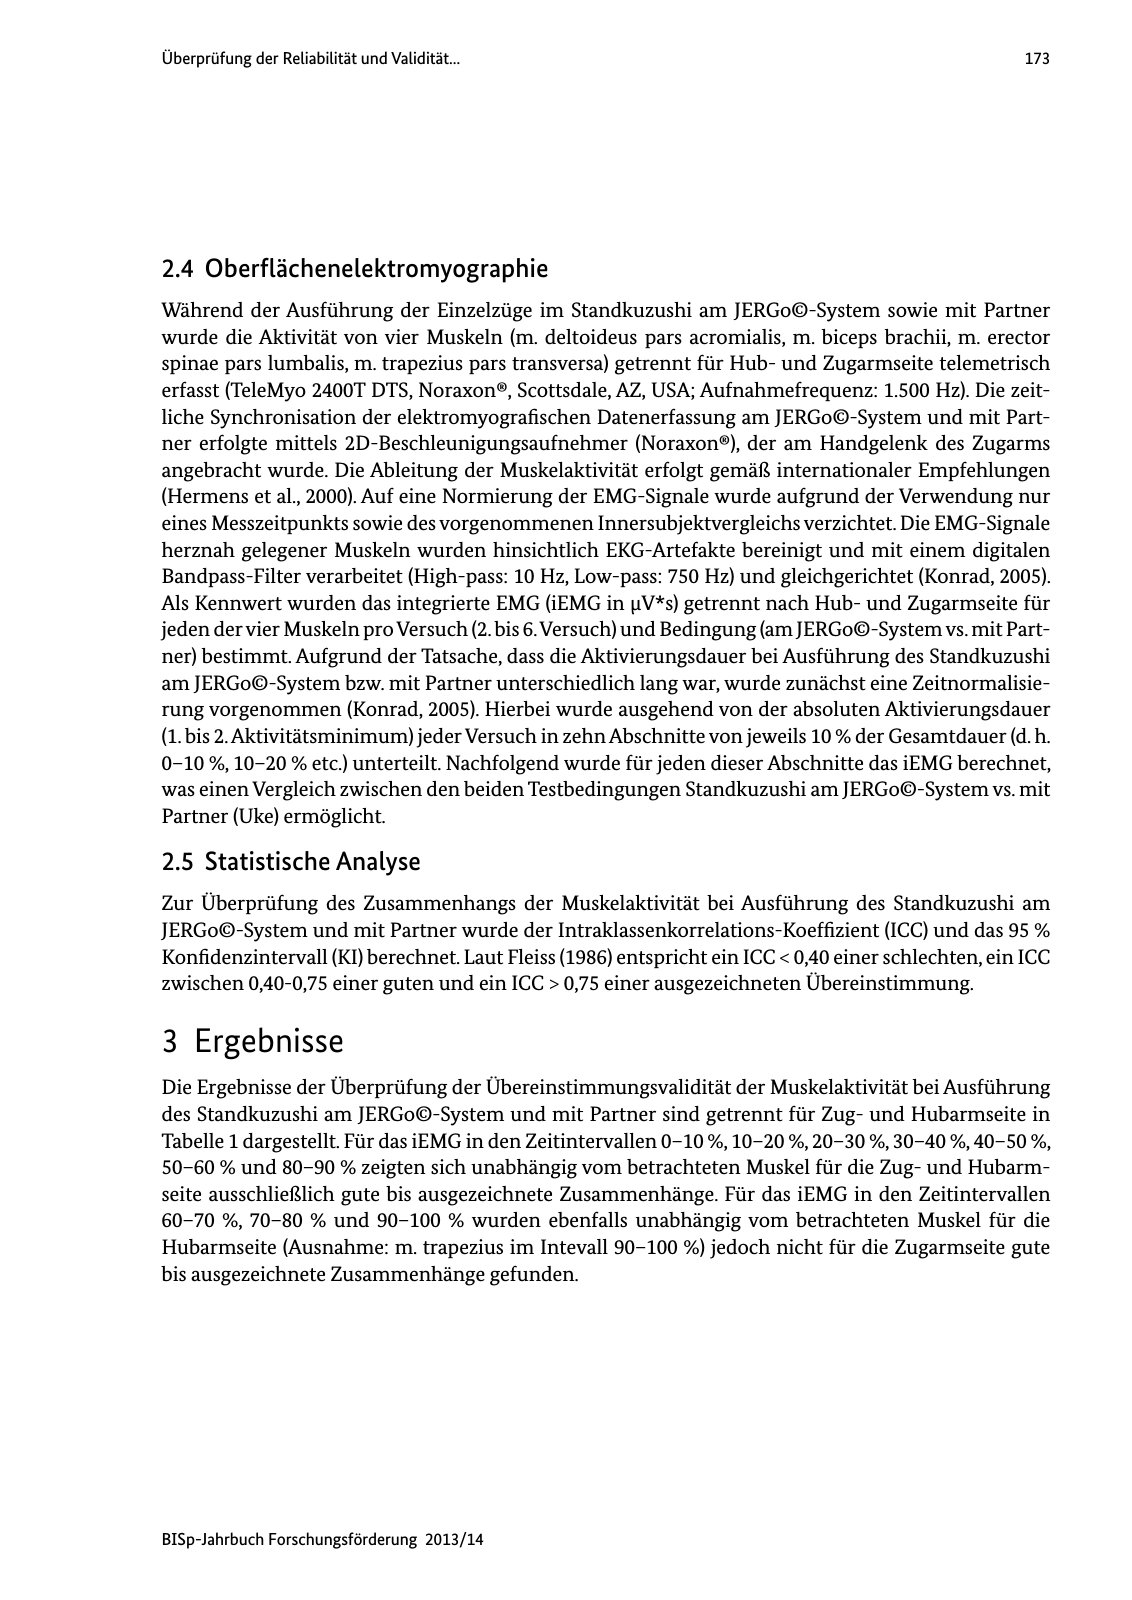 Vorschau BISp-Jahrbuch Forschungsförderung 2013/14 Seite 174